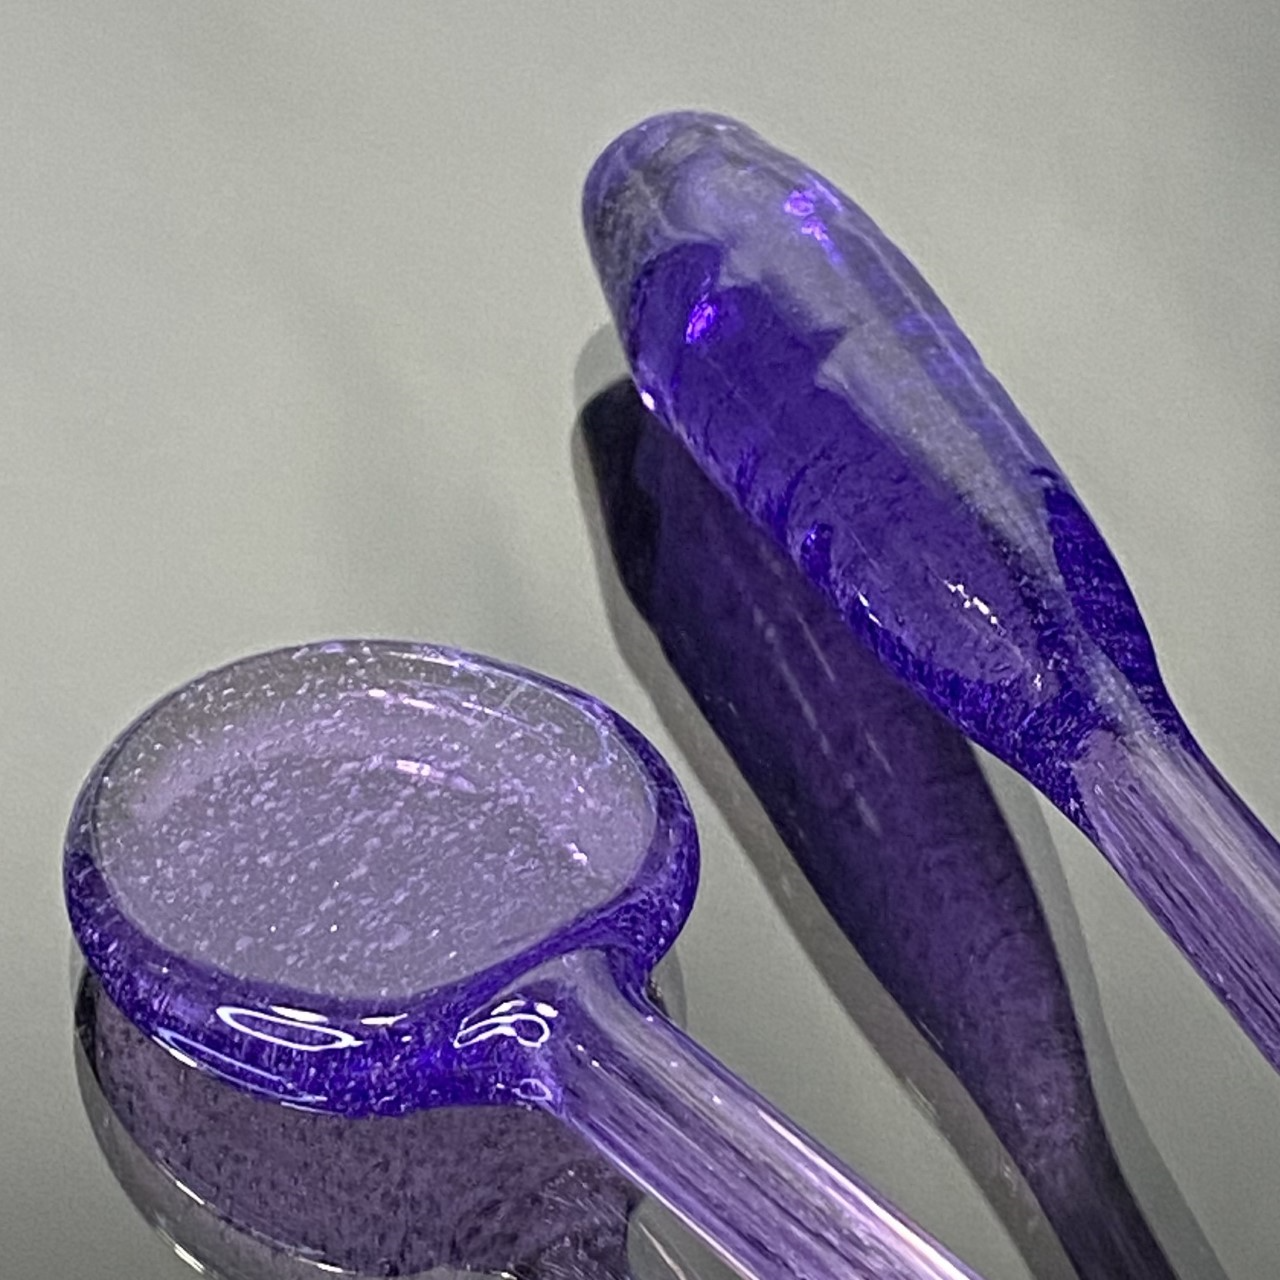 Purple Lollipop